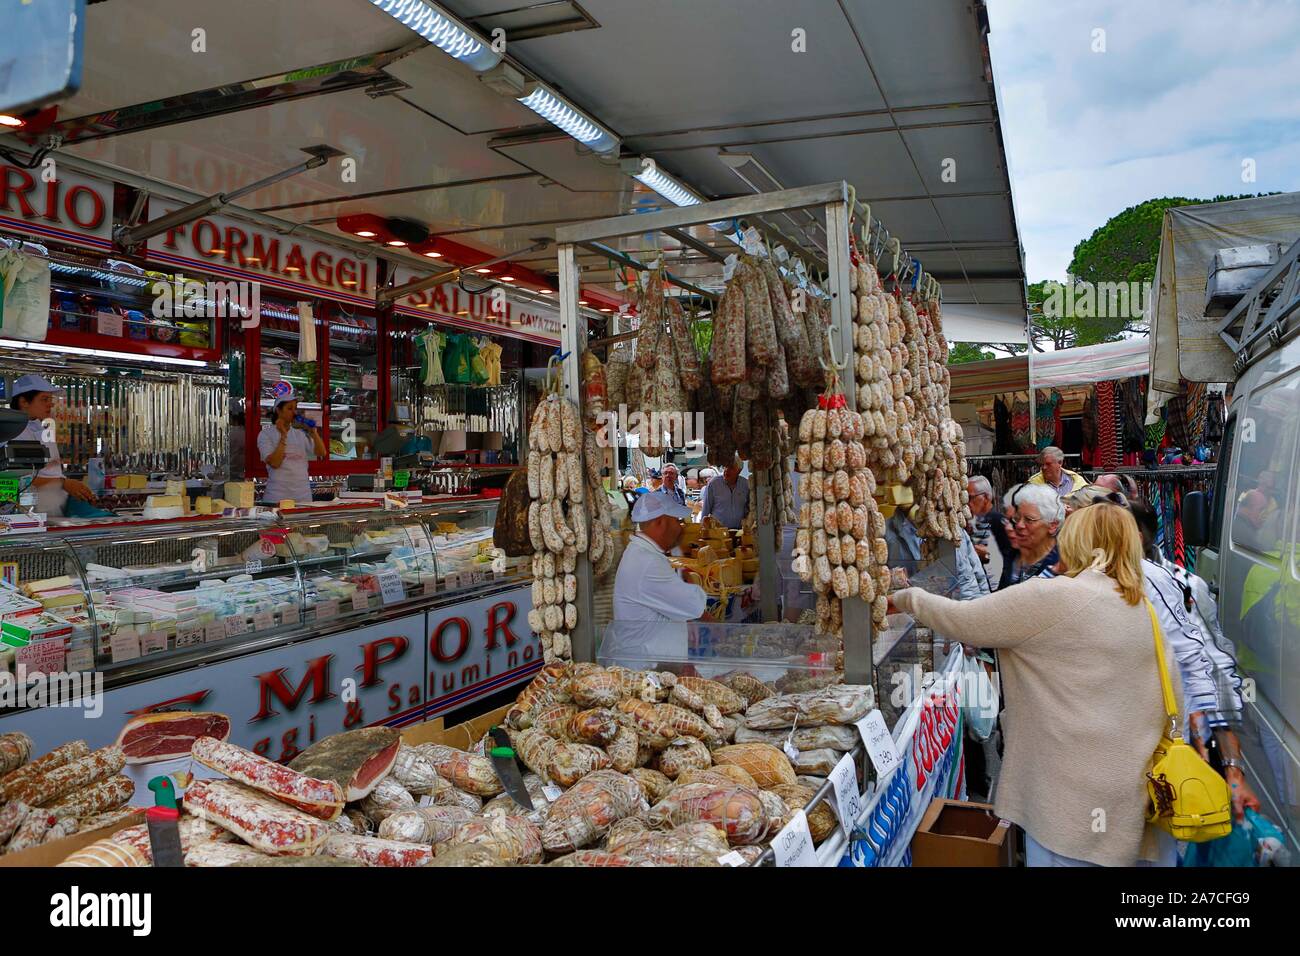 Der Wochenmarkt in Desenzano del Garda in der Provinz Brescia wird direkt am Ufer des Gardasee abgehalten. Kleidung, Schuhe, Fleisch, Käse, Olivenöl u Stock Photo